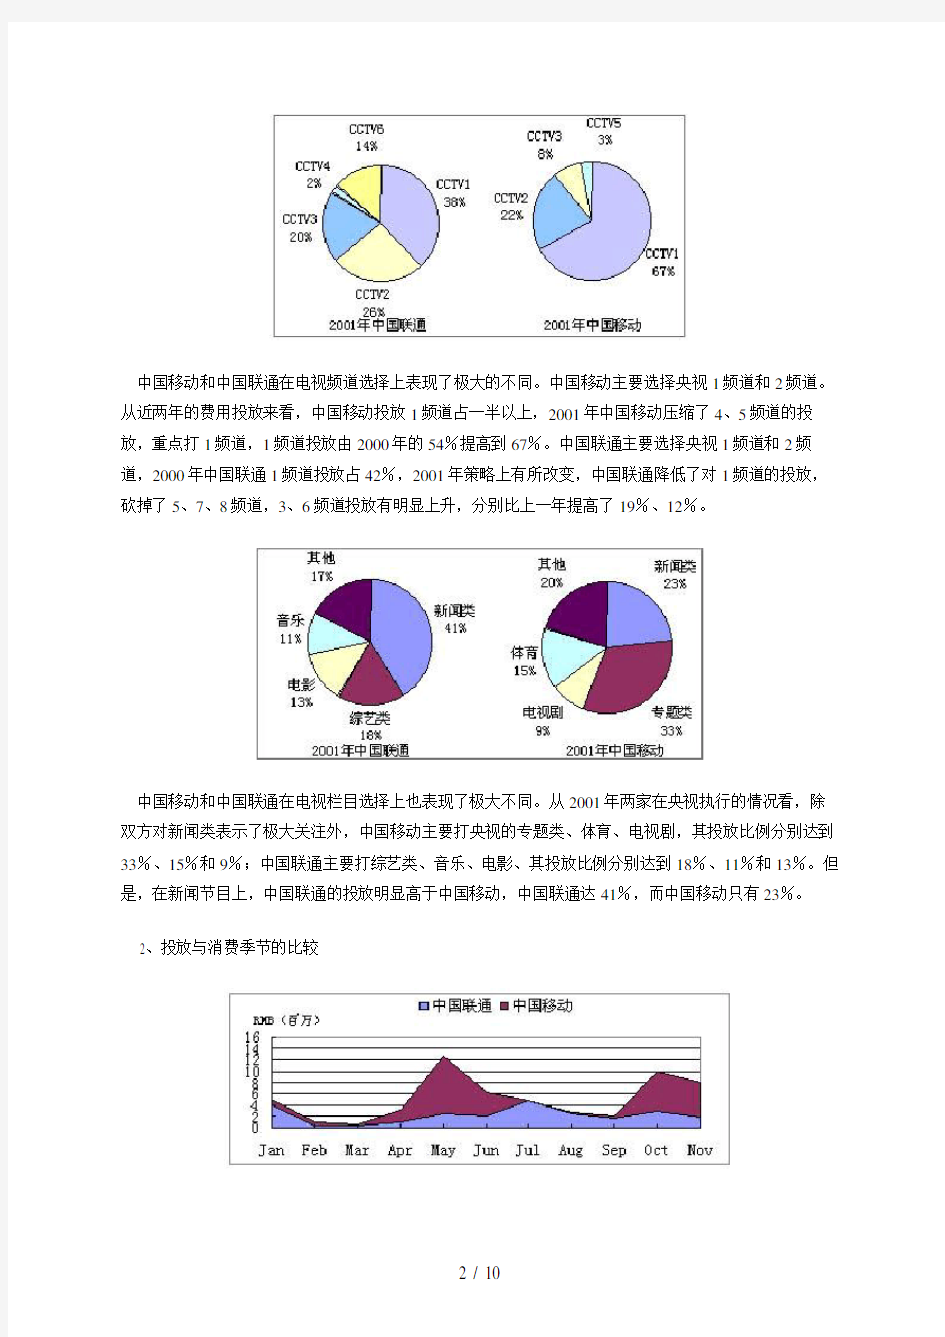 中国移动和中国联通媒体投放策略比较